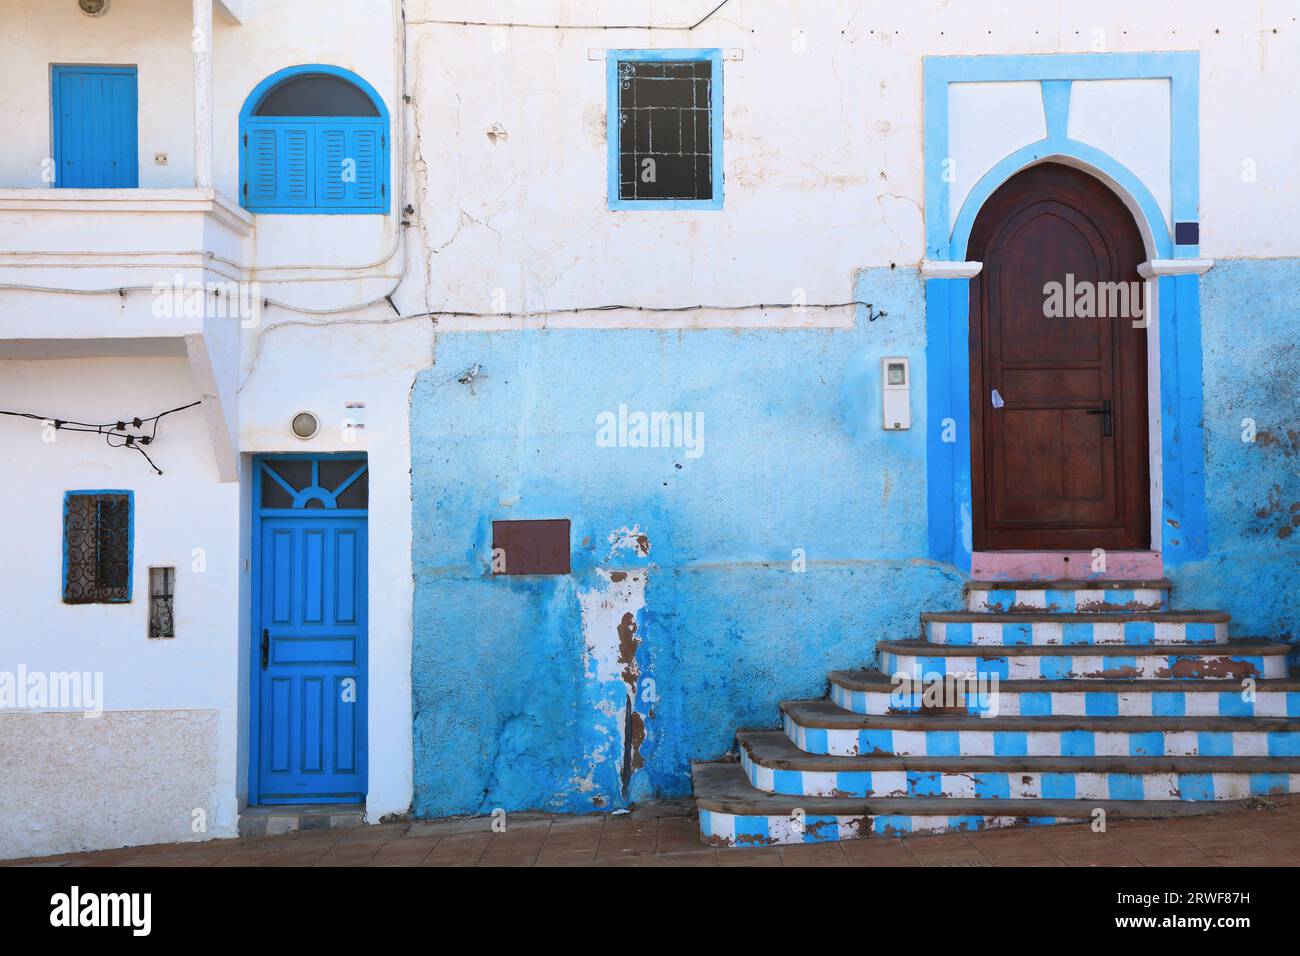 Ville de Sidi Ifni au Maroc. Murs peints en bleu avec vue sur la rue. Banque D'Images